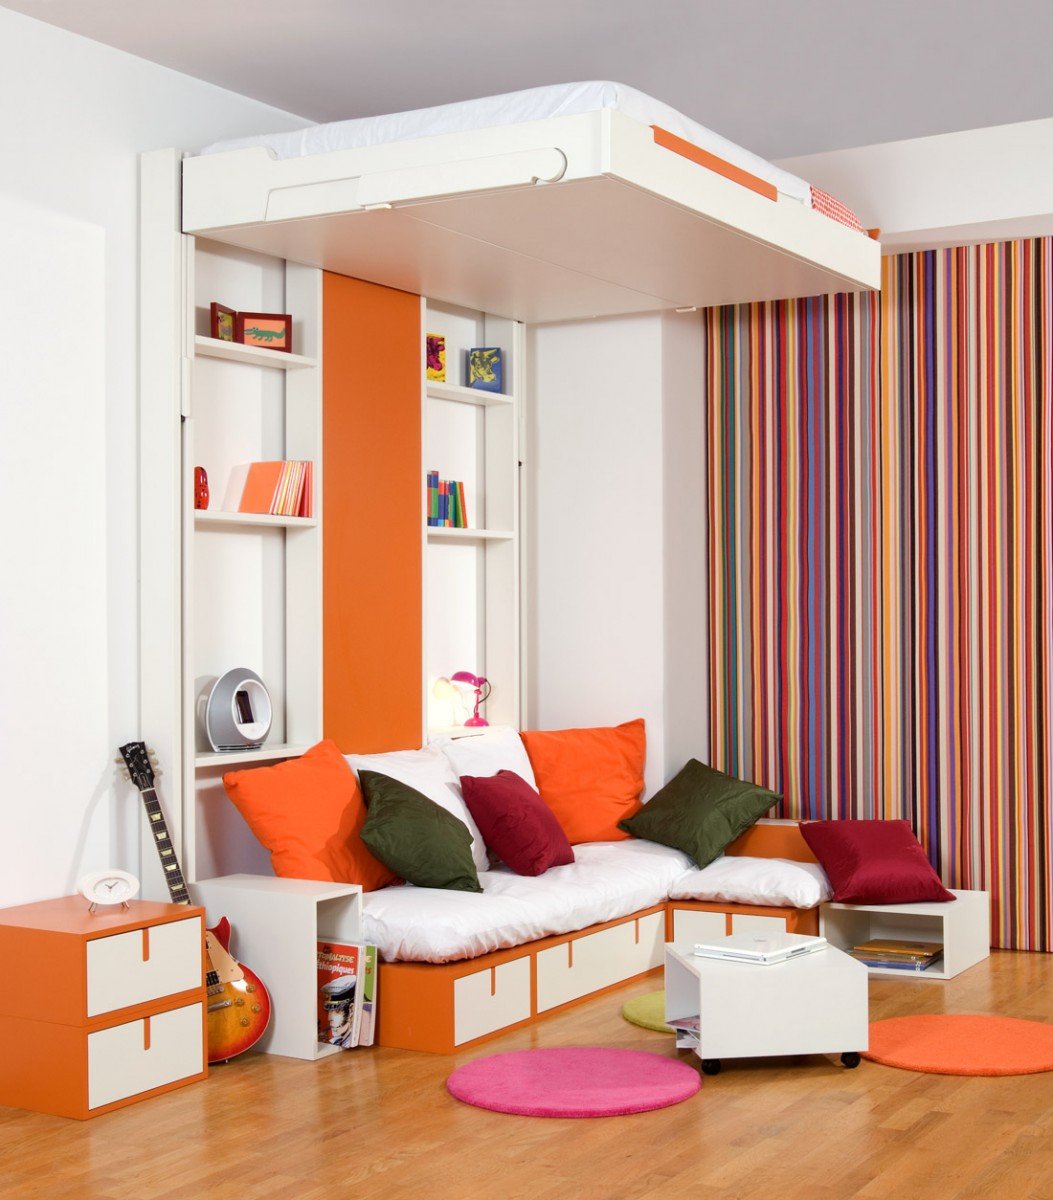 Espace Loggia's "Pop and roll" bed (livinginashoebox.com)